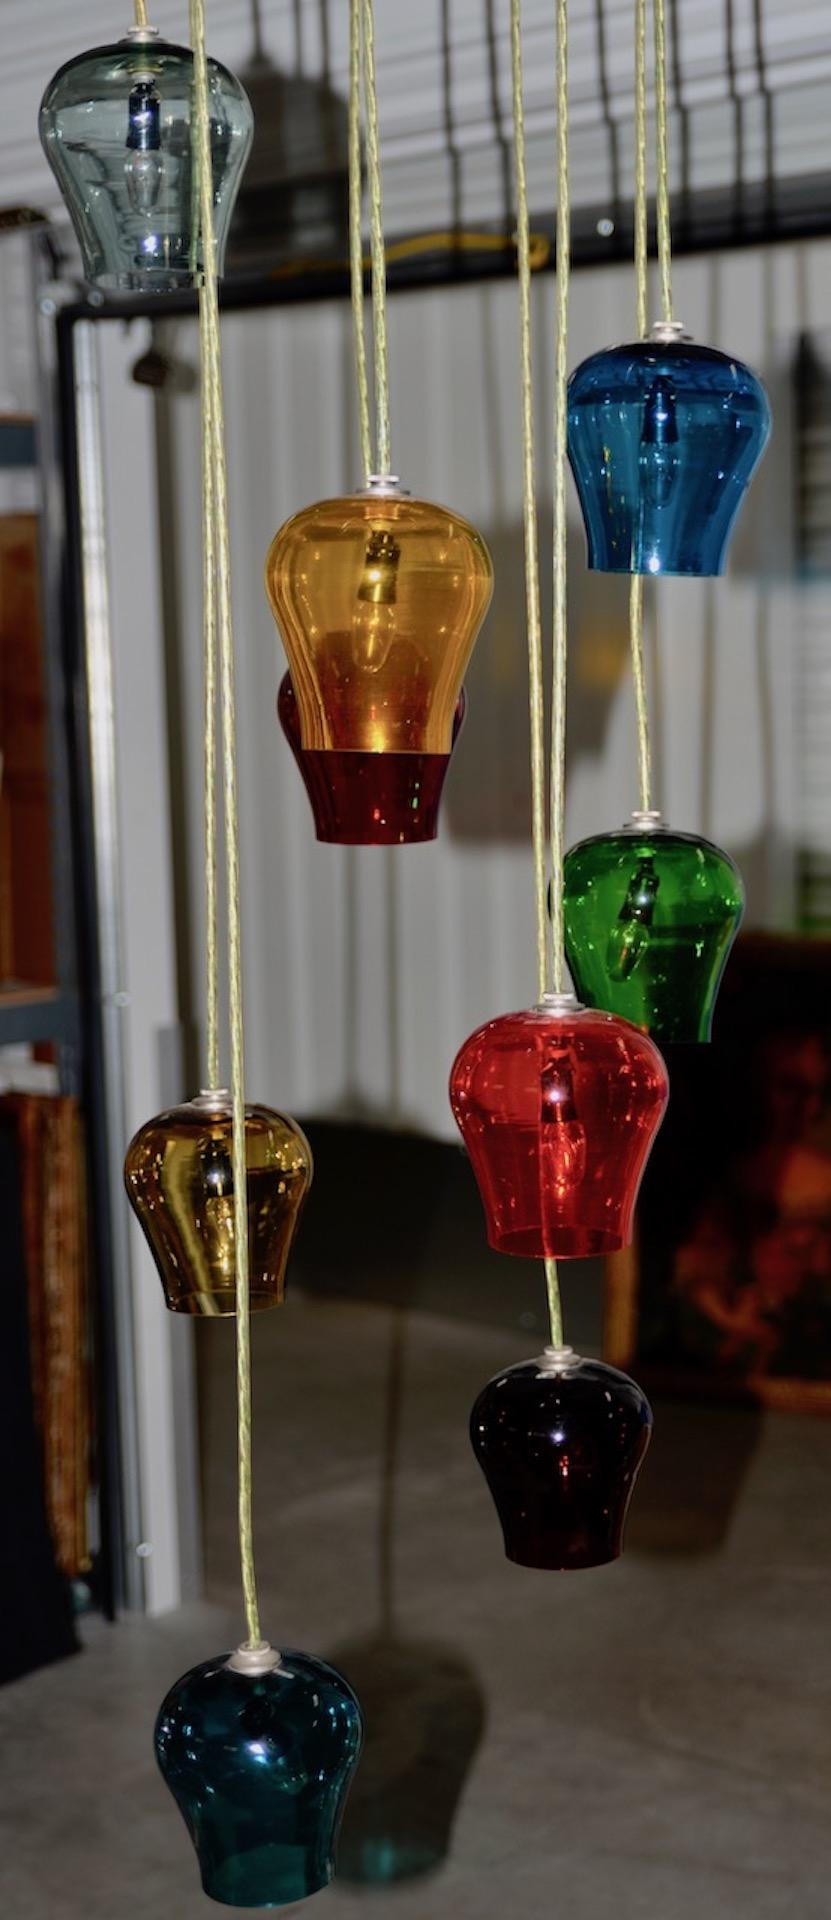 Kronleuchter im Stil von Morris Lapidus aus mundgeblasenem mehrfarbigem Glas, um 1960

Fantastischer hängender Pedant-Kronleuchter mit 9 Lichtern. Jede Leuchte kann leicht in der Höhe verstellt werden.

Jeder Kelch hat einen Durchmesser von 4,5